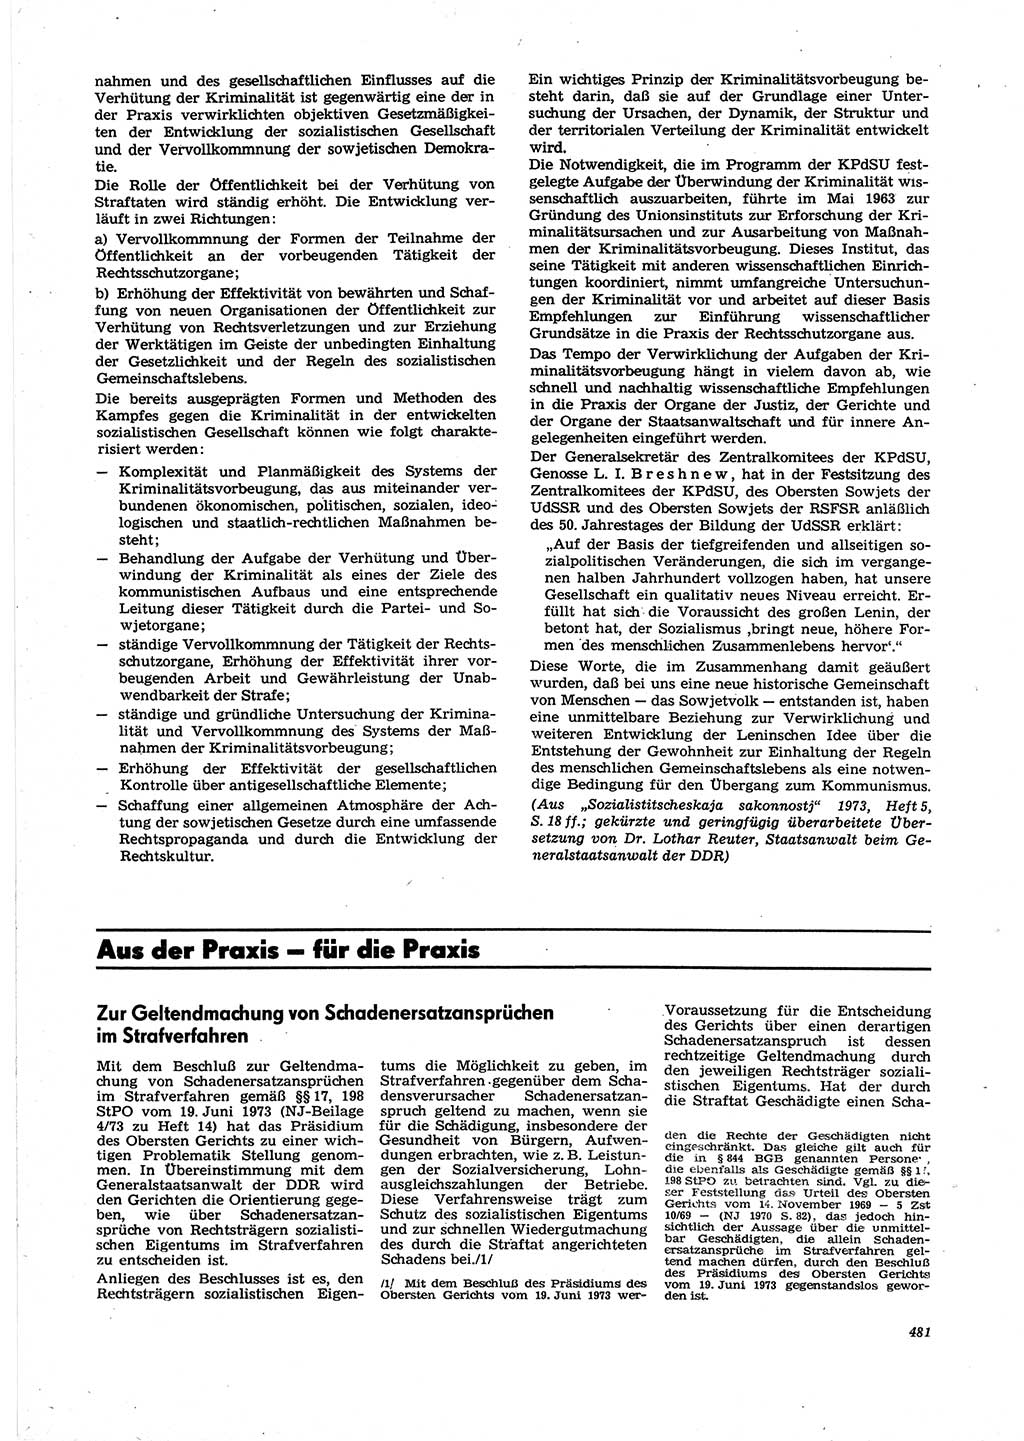 Neue Justiz (NJ), Zeitschrift für Recht und Rechtswissenschaft [Deutsche Demokratische Republik (DDR)], 27. Jahrgang 1973, Seite 481 (NJ DDR 1973, S. 481)